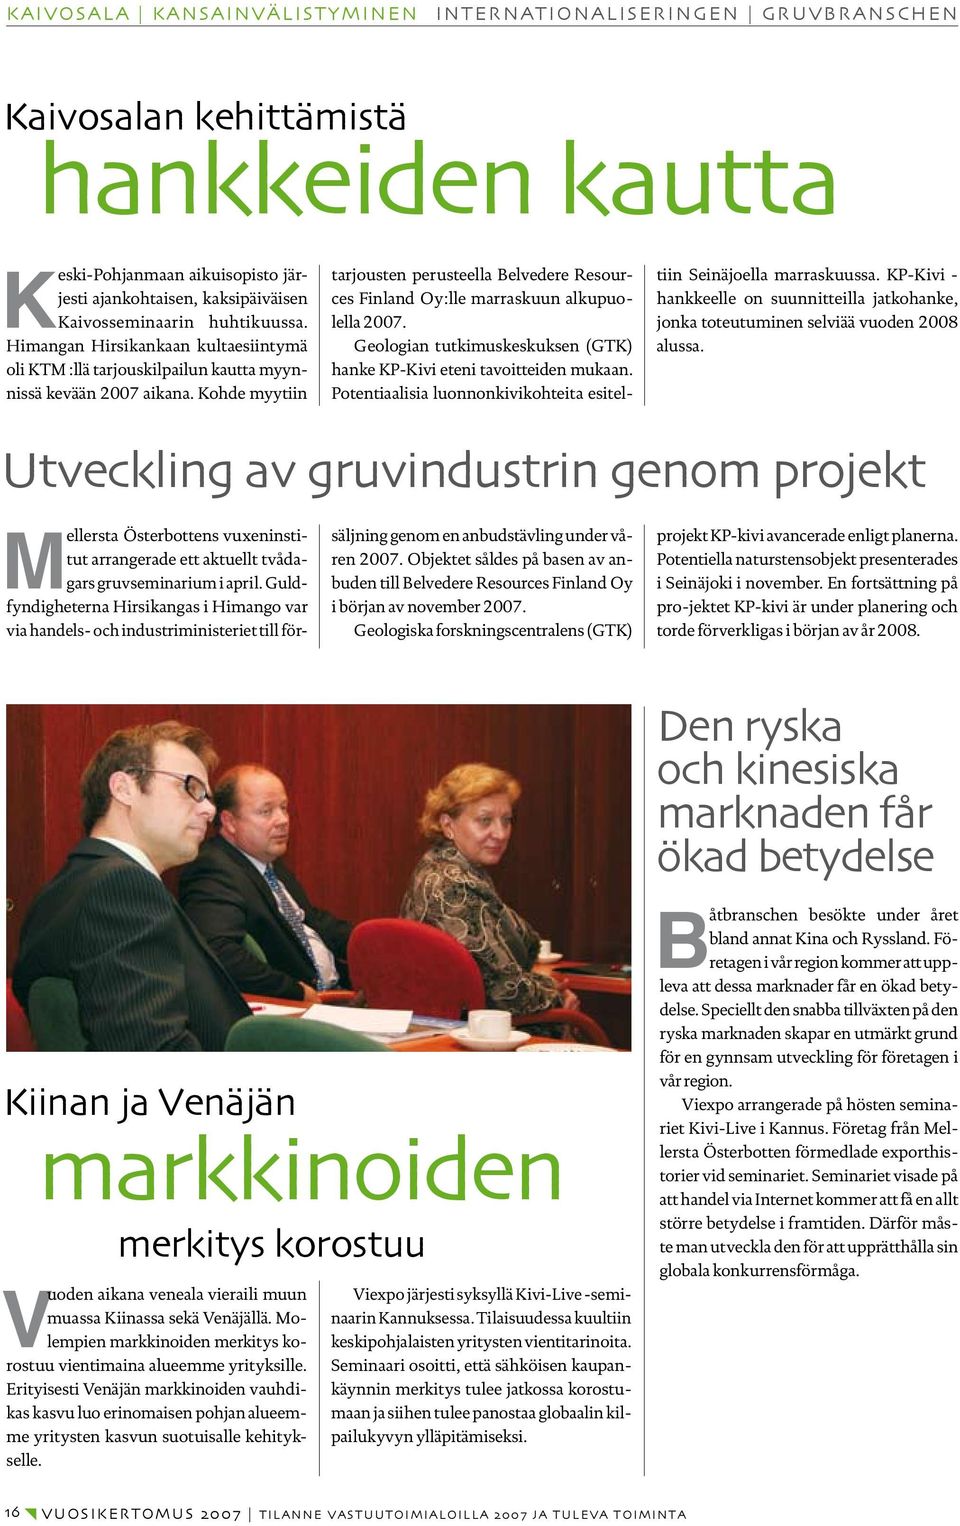 Kohde myytiin tarjousten perusteella Belvedere Resources Finland Oy:lle marraskuun alkupuolella 2007. Geologian tutkimuskeskuksen (GTK) hanke KP-Kivi eteni tavoitteiden mukaan.